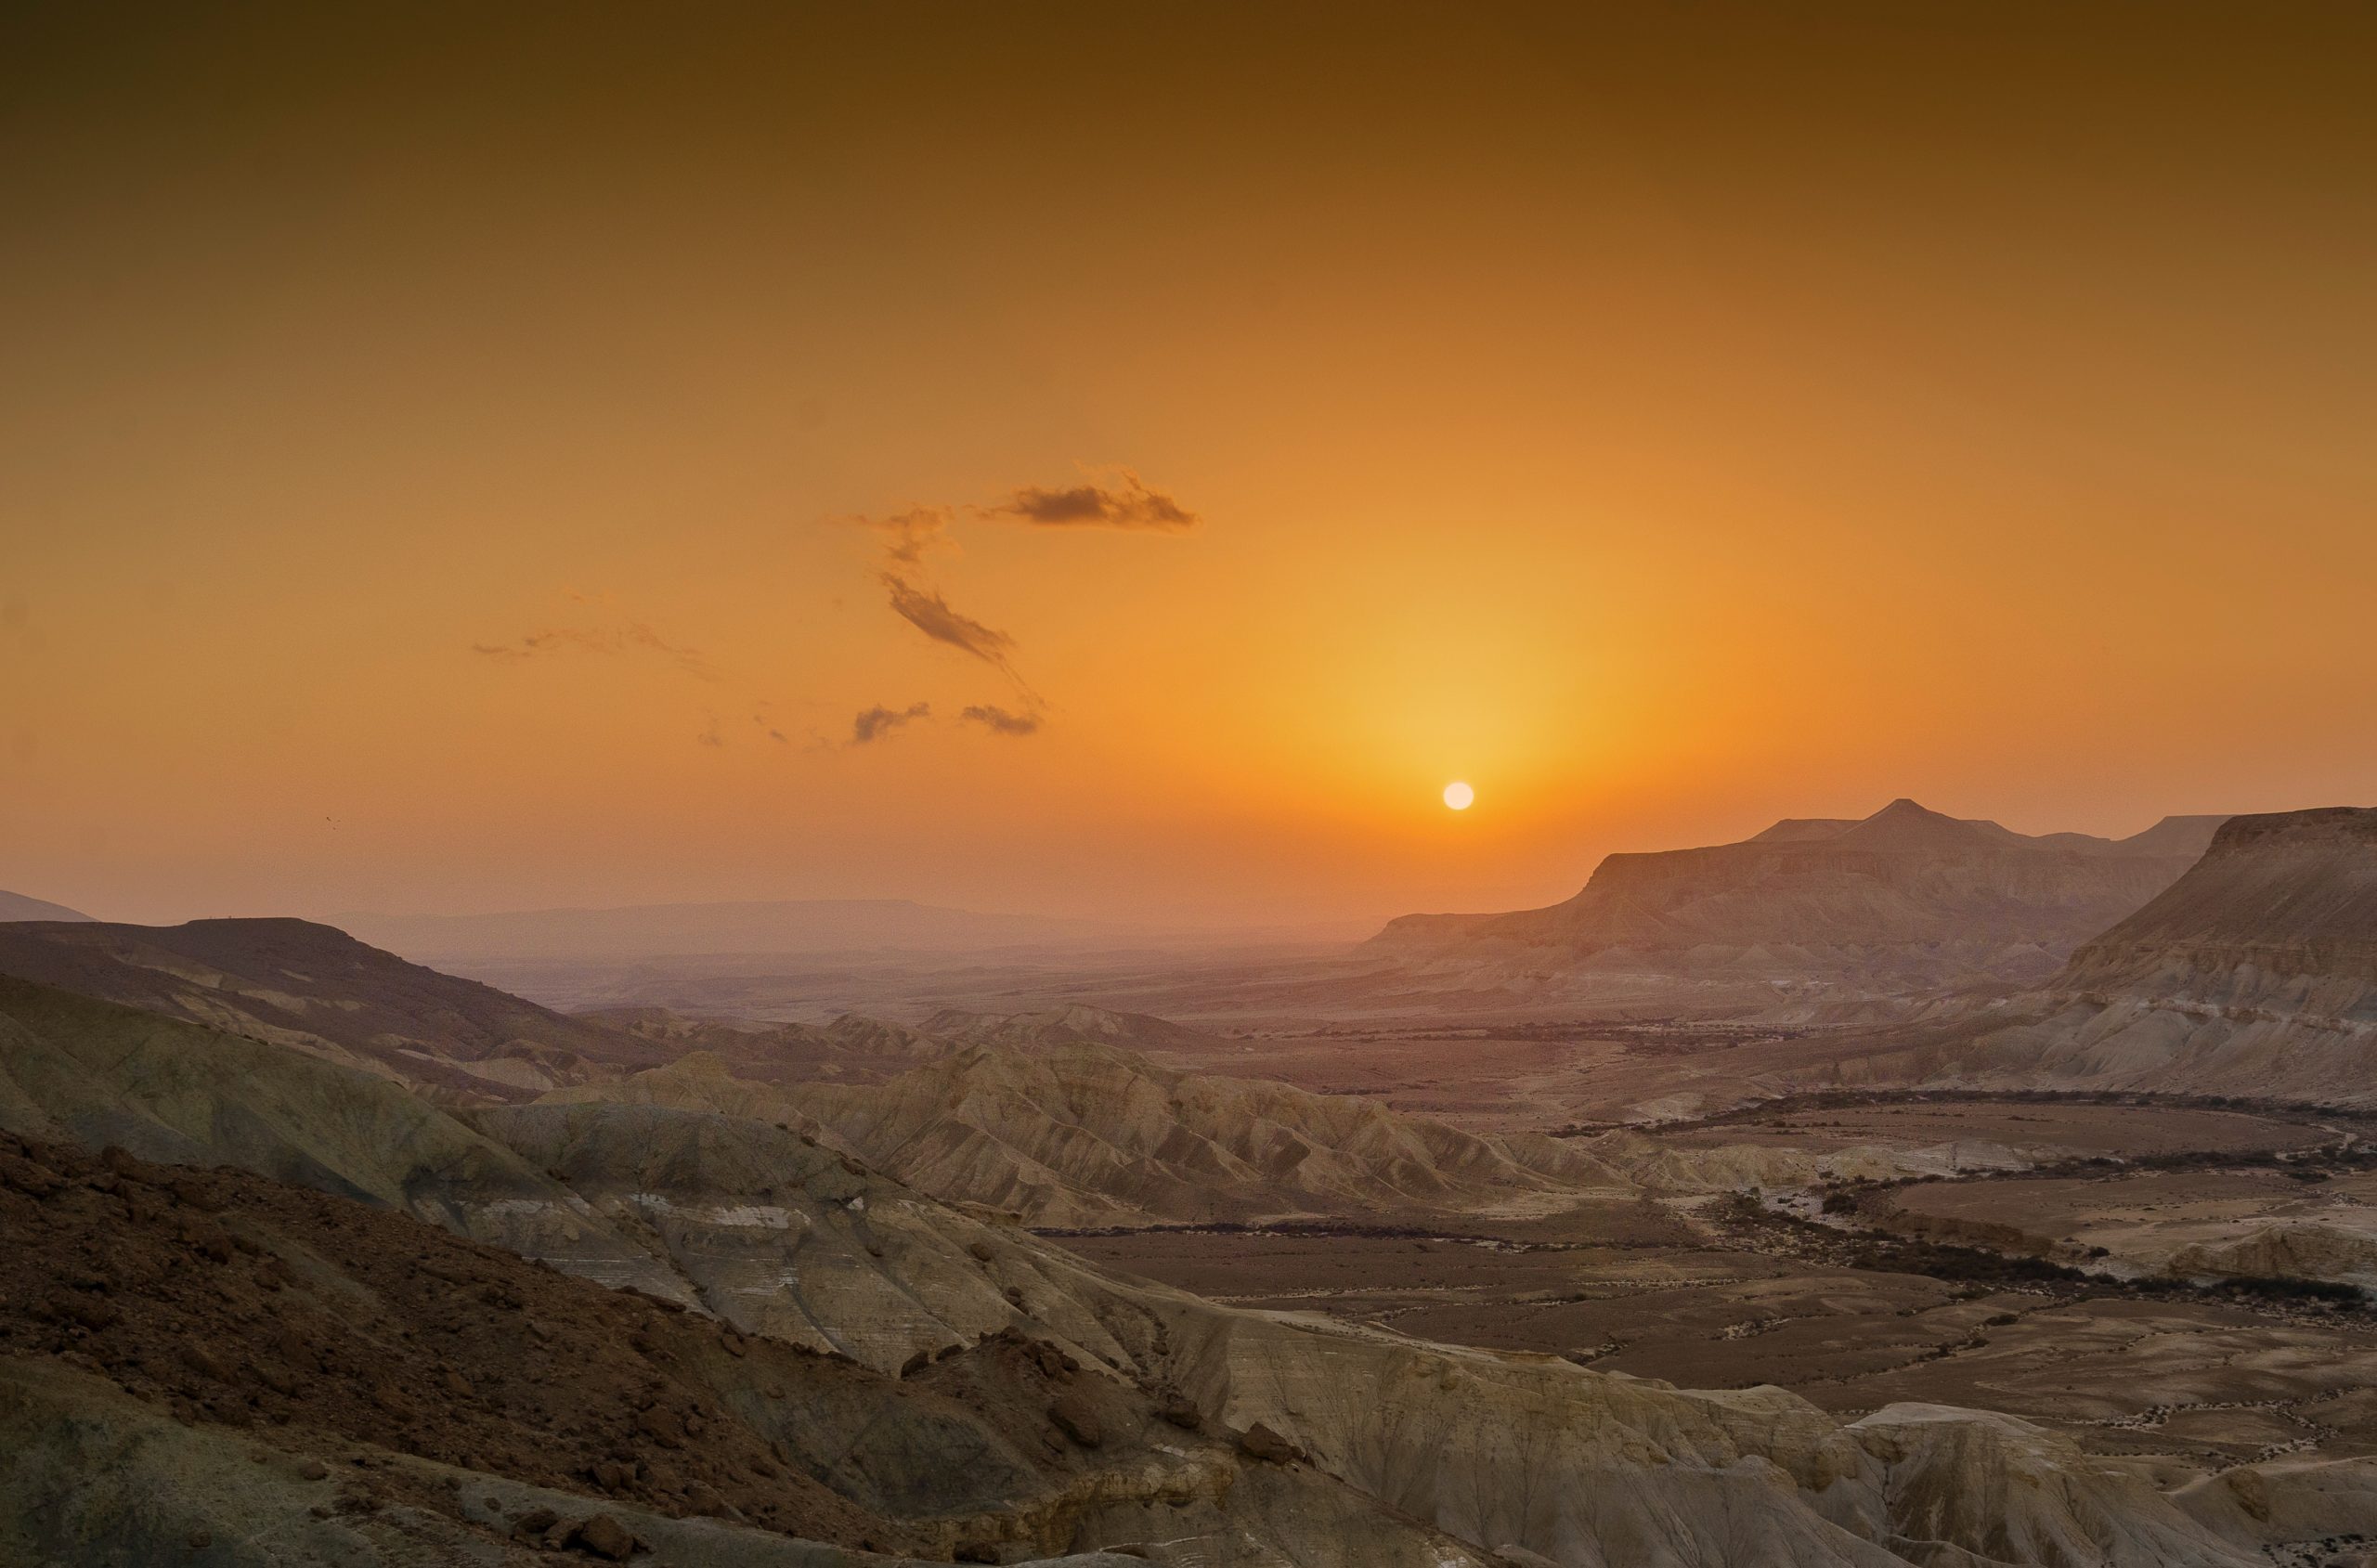 El sol sobre el desierto del Negev, desde Sde Boker, municipio de Israel. Foto: Creative Commons.